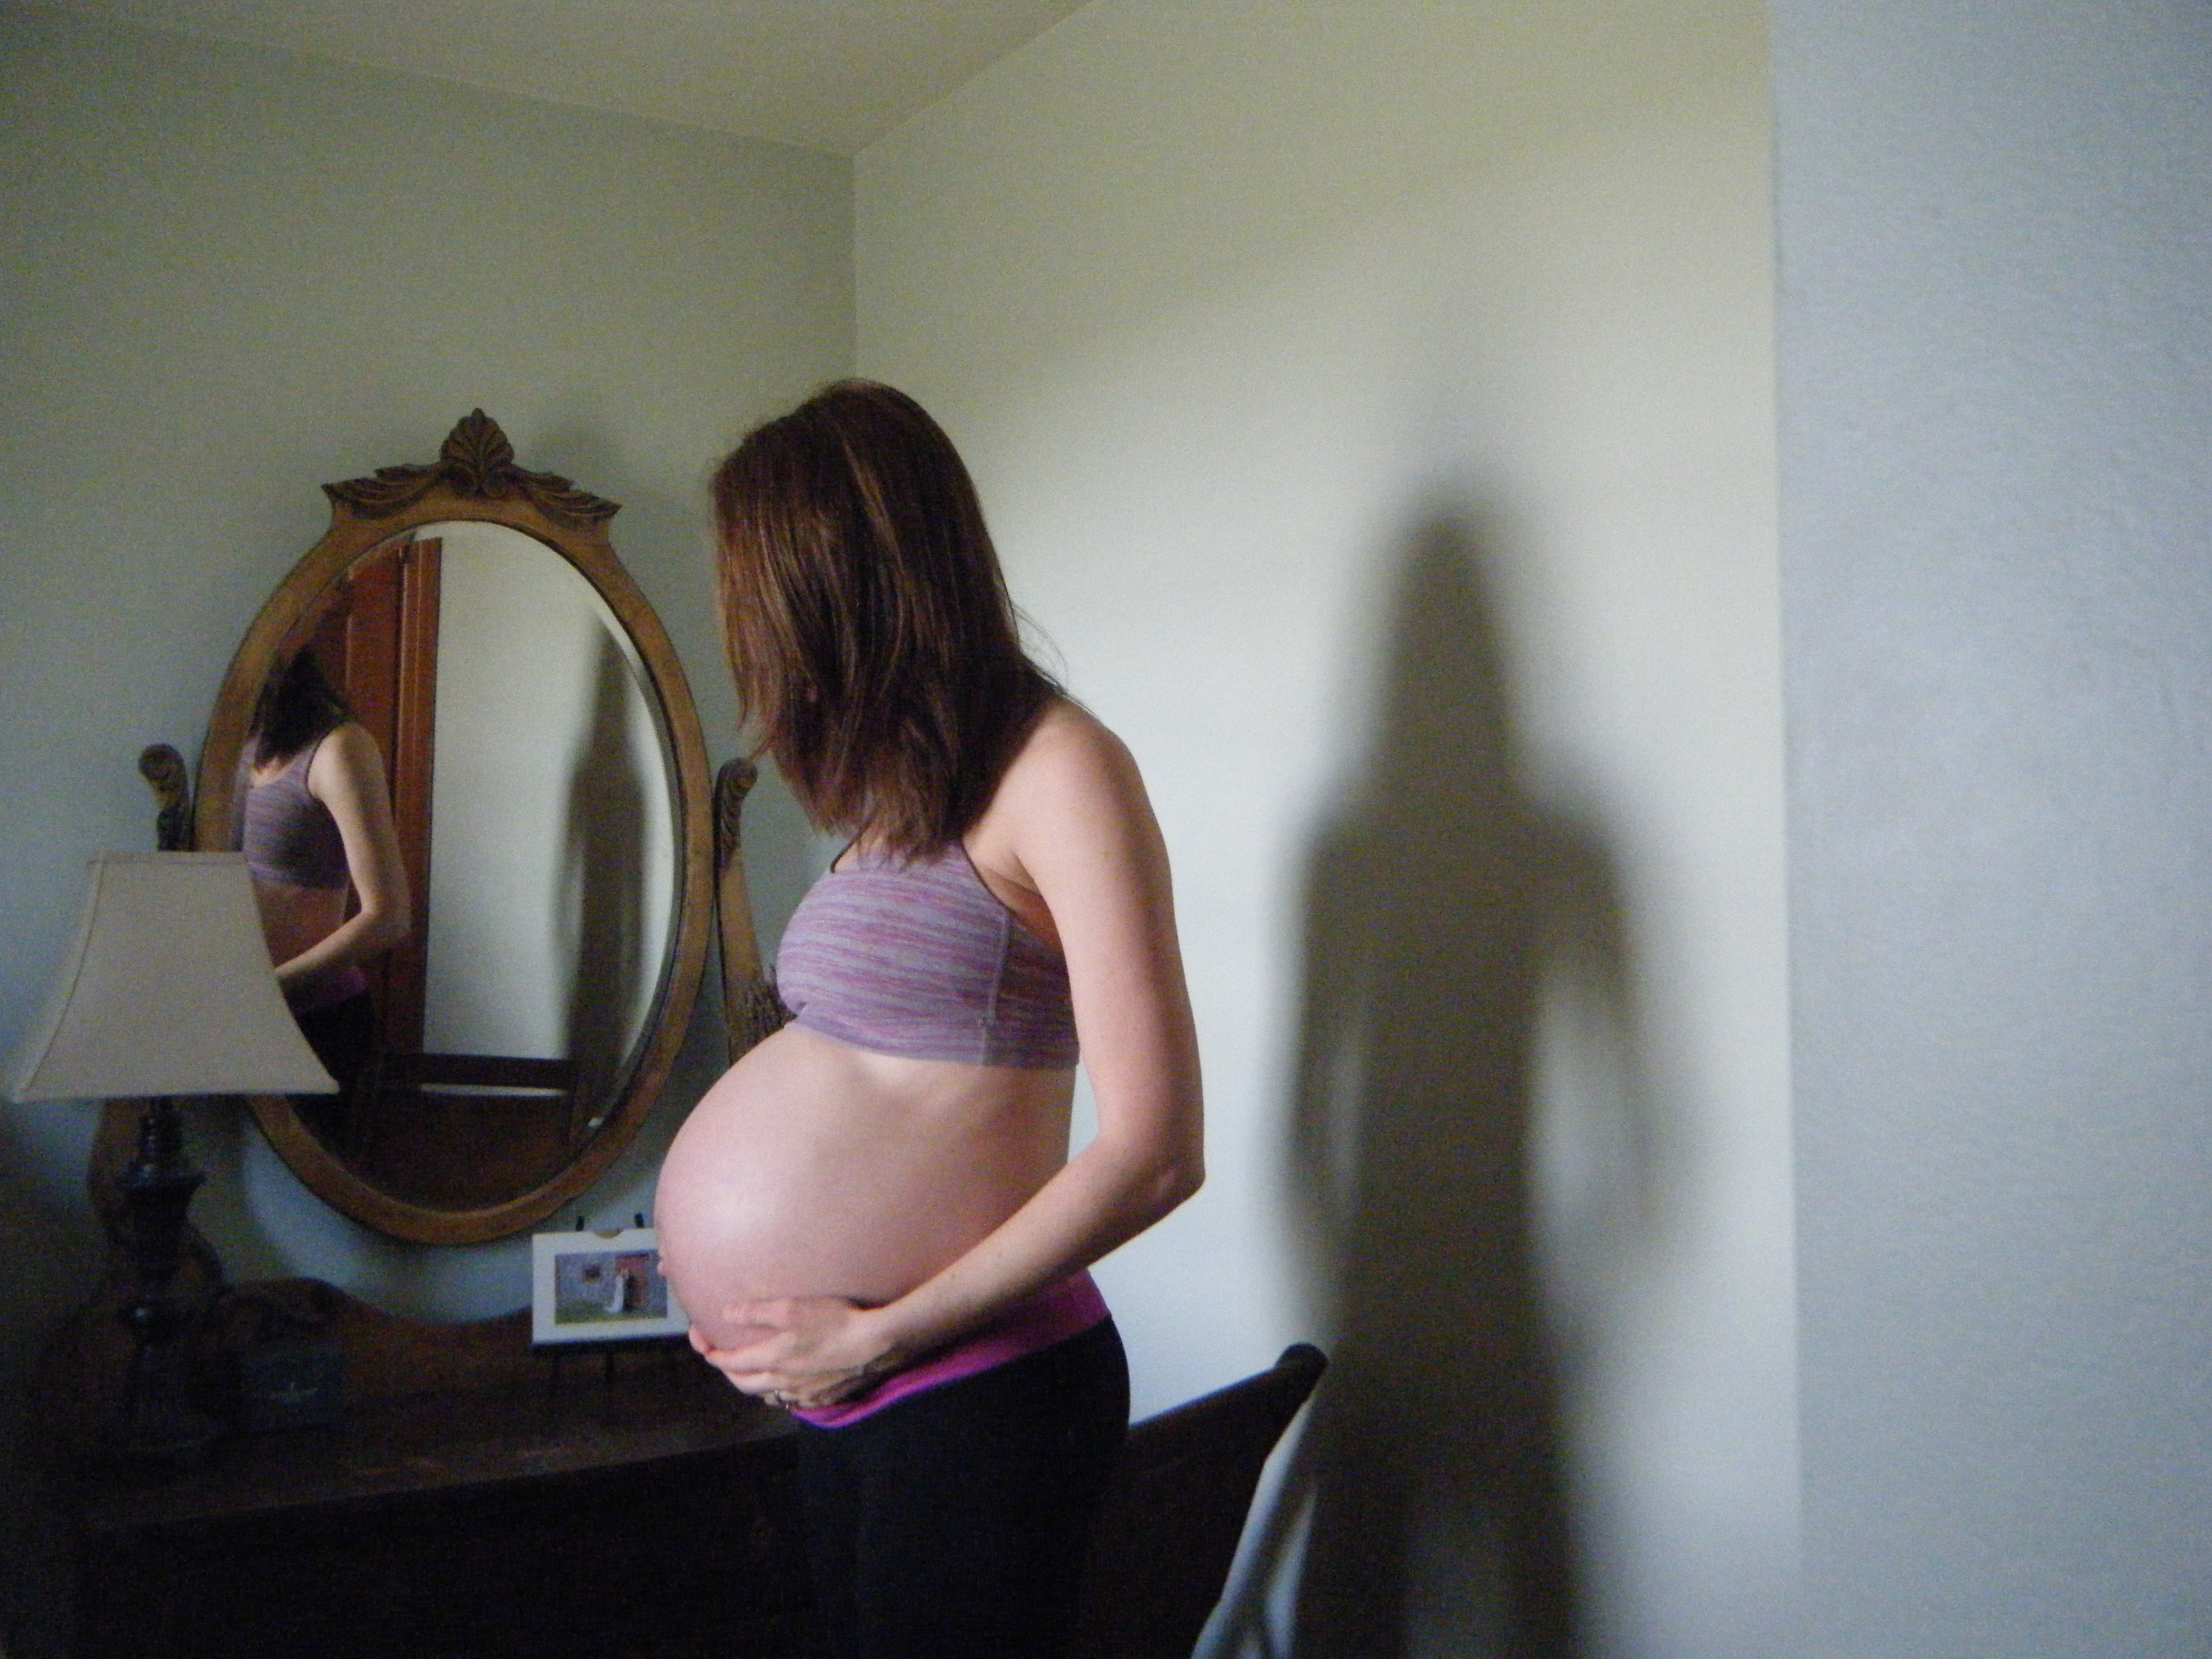 runner 38 weeks pregnant